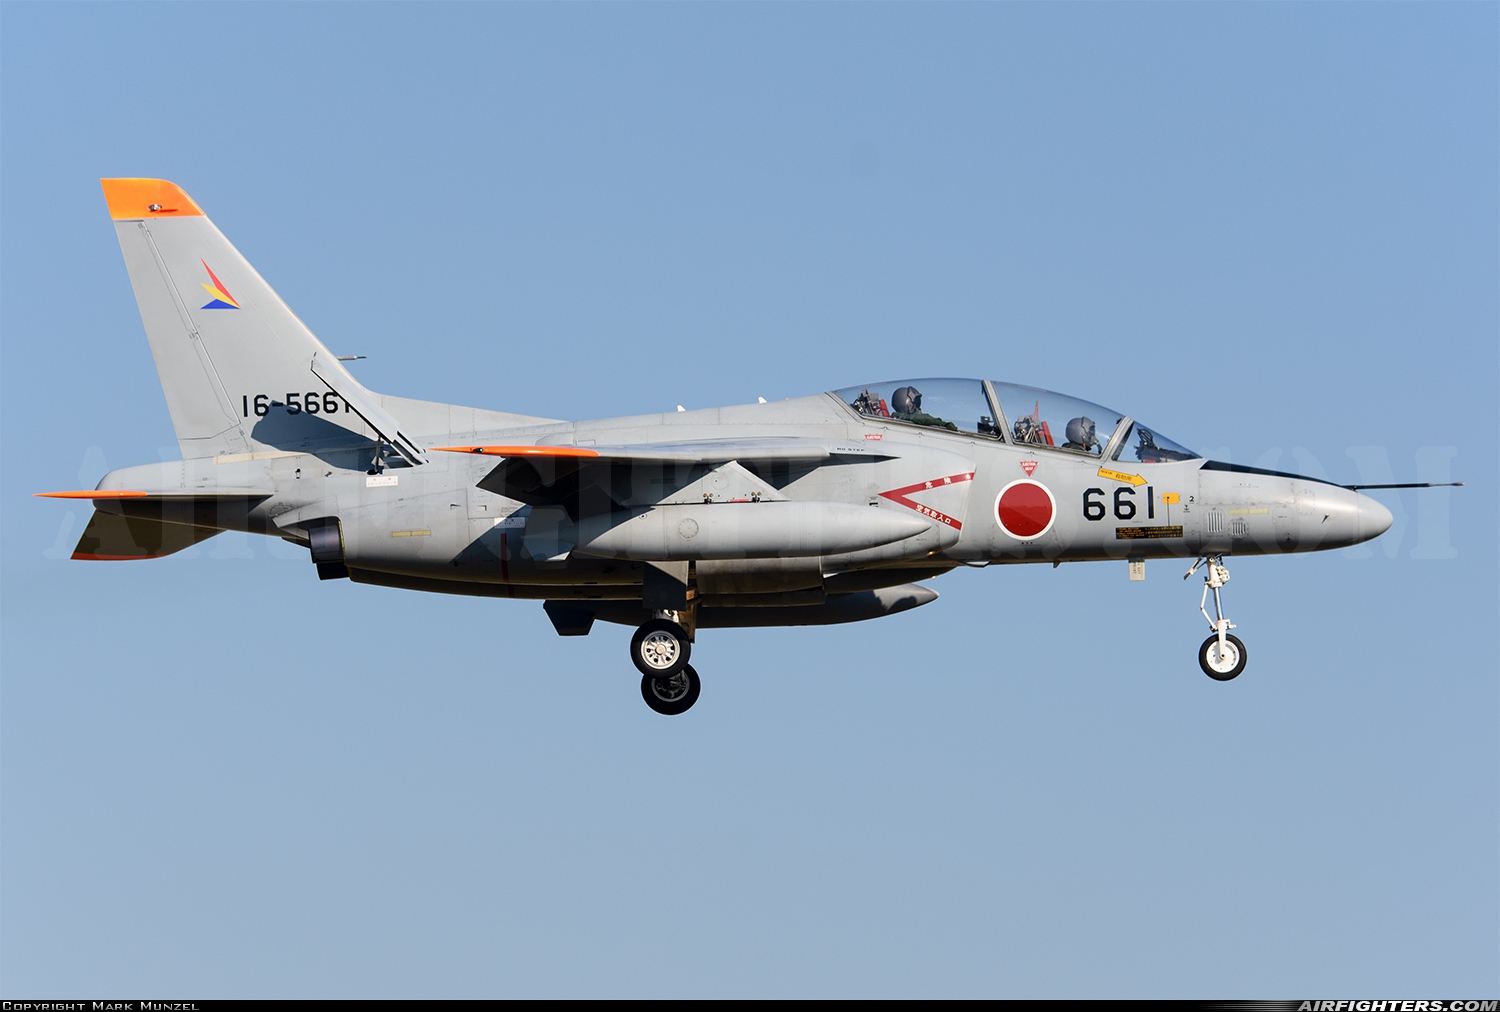 Japan - Air Force Kawasaki T-4 16-5661 at Iruma (RJTJ), Japan